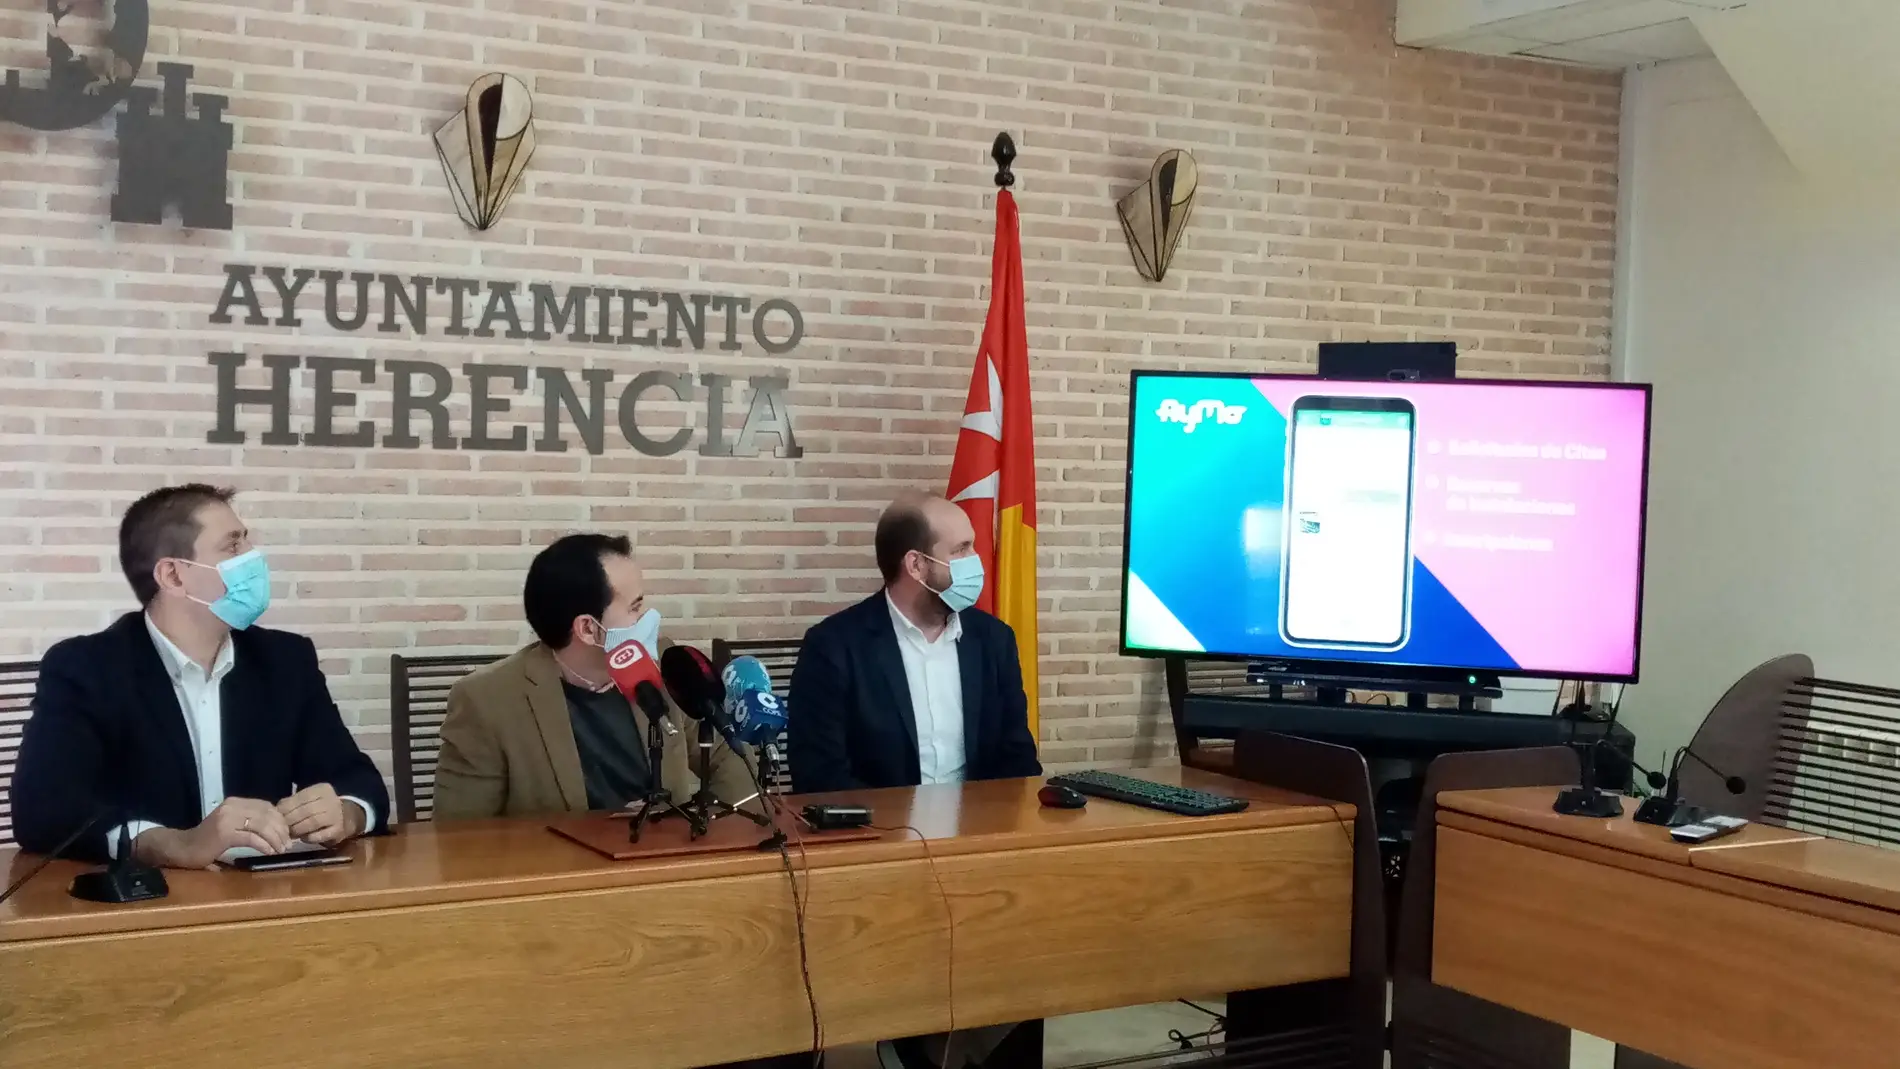 El Ayuntamiento de Herencia lanza una nueva APP móvil para ampliar el contacto con el ciudadano